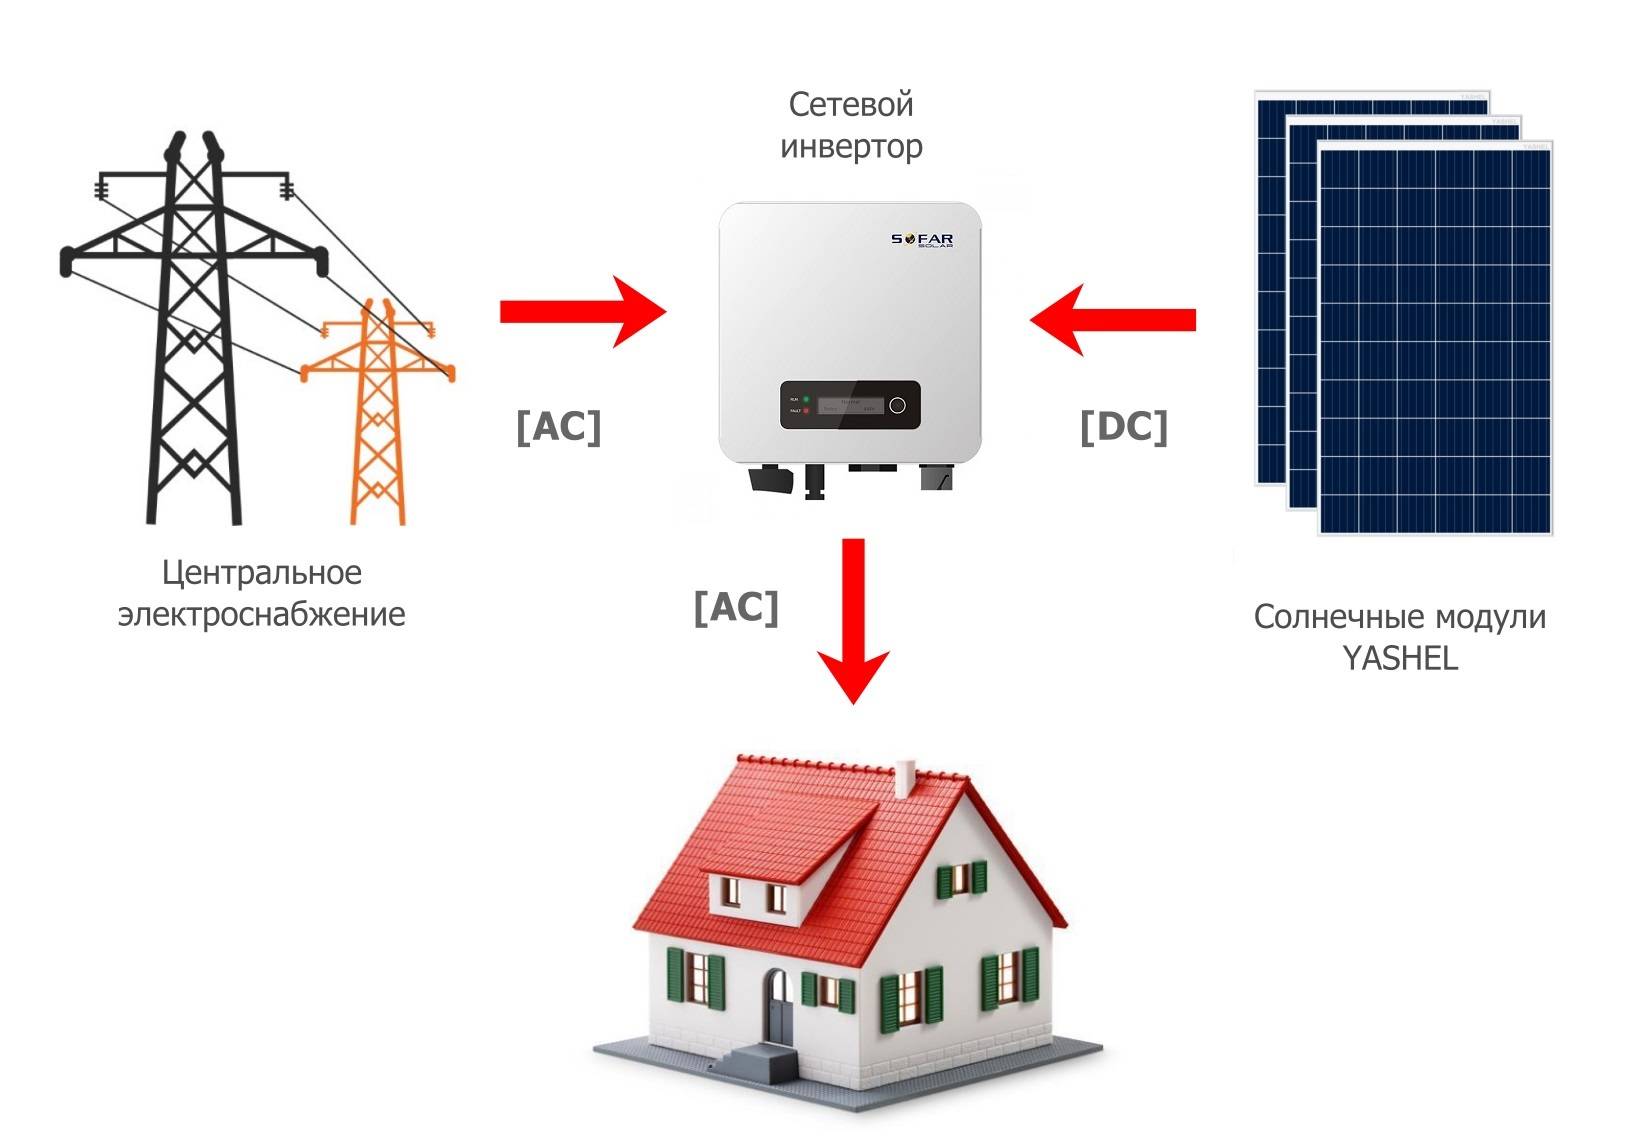 Гибридный инвертор для солнечных батарей - принцип работы, выбор устройства и схема монтажа